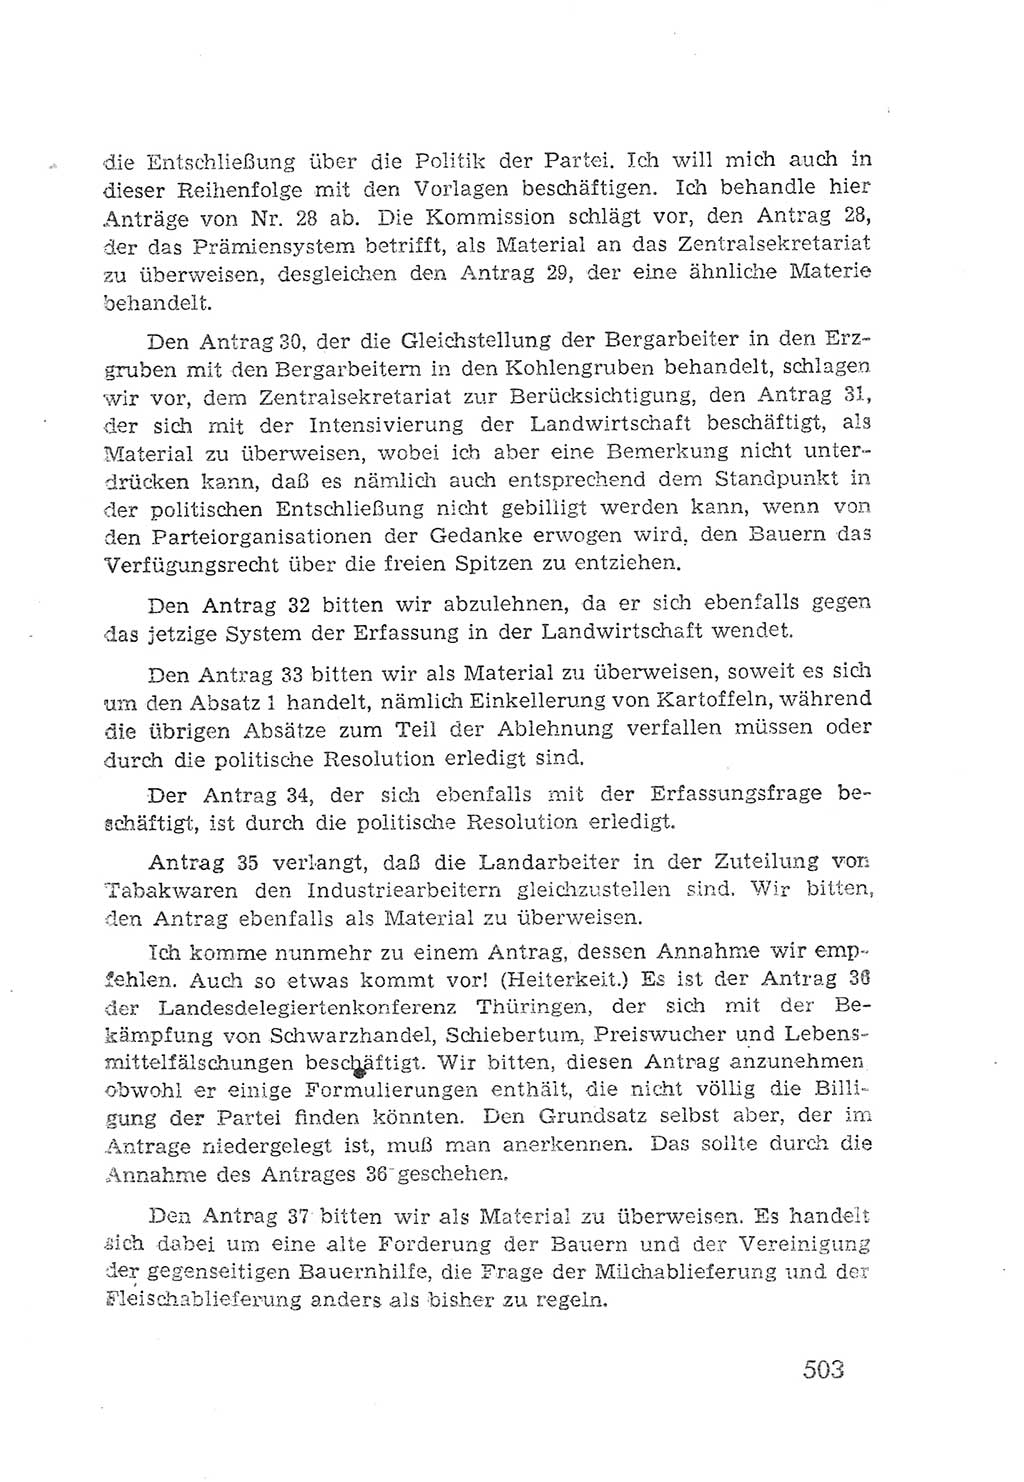 Protokoll der Verhandlungen des 2. Parteitages der Sozialistischen Einheitspartei Deutschlands (SED) [Sowjetische Besatzungszone (SBZ) Deutschlands] 1947, Seite 503 (Prot. Verh. 2. PT SED SBZ Dtl. 1947, S. 503)